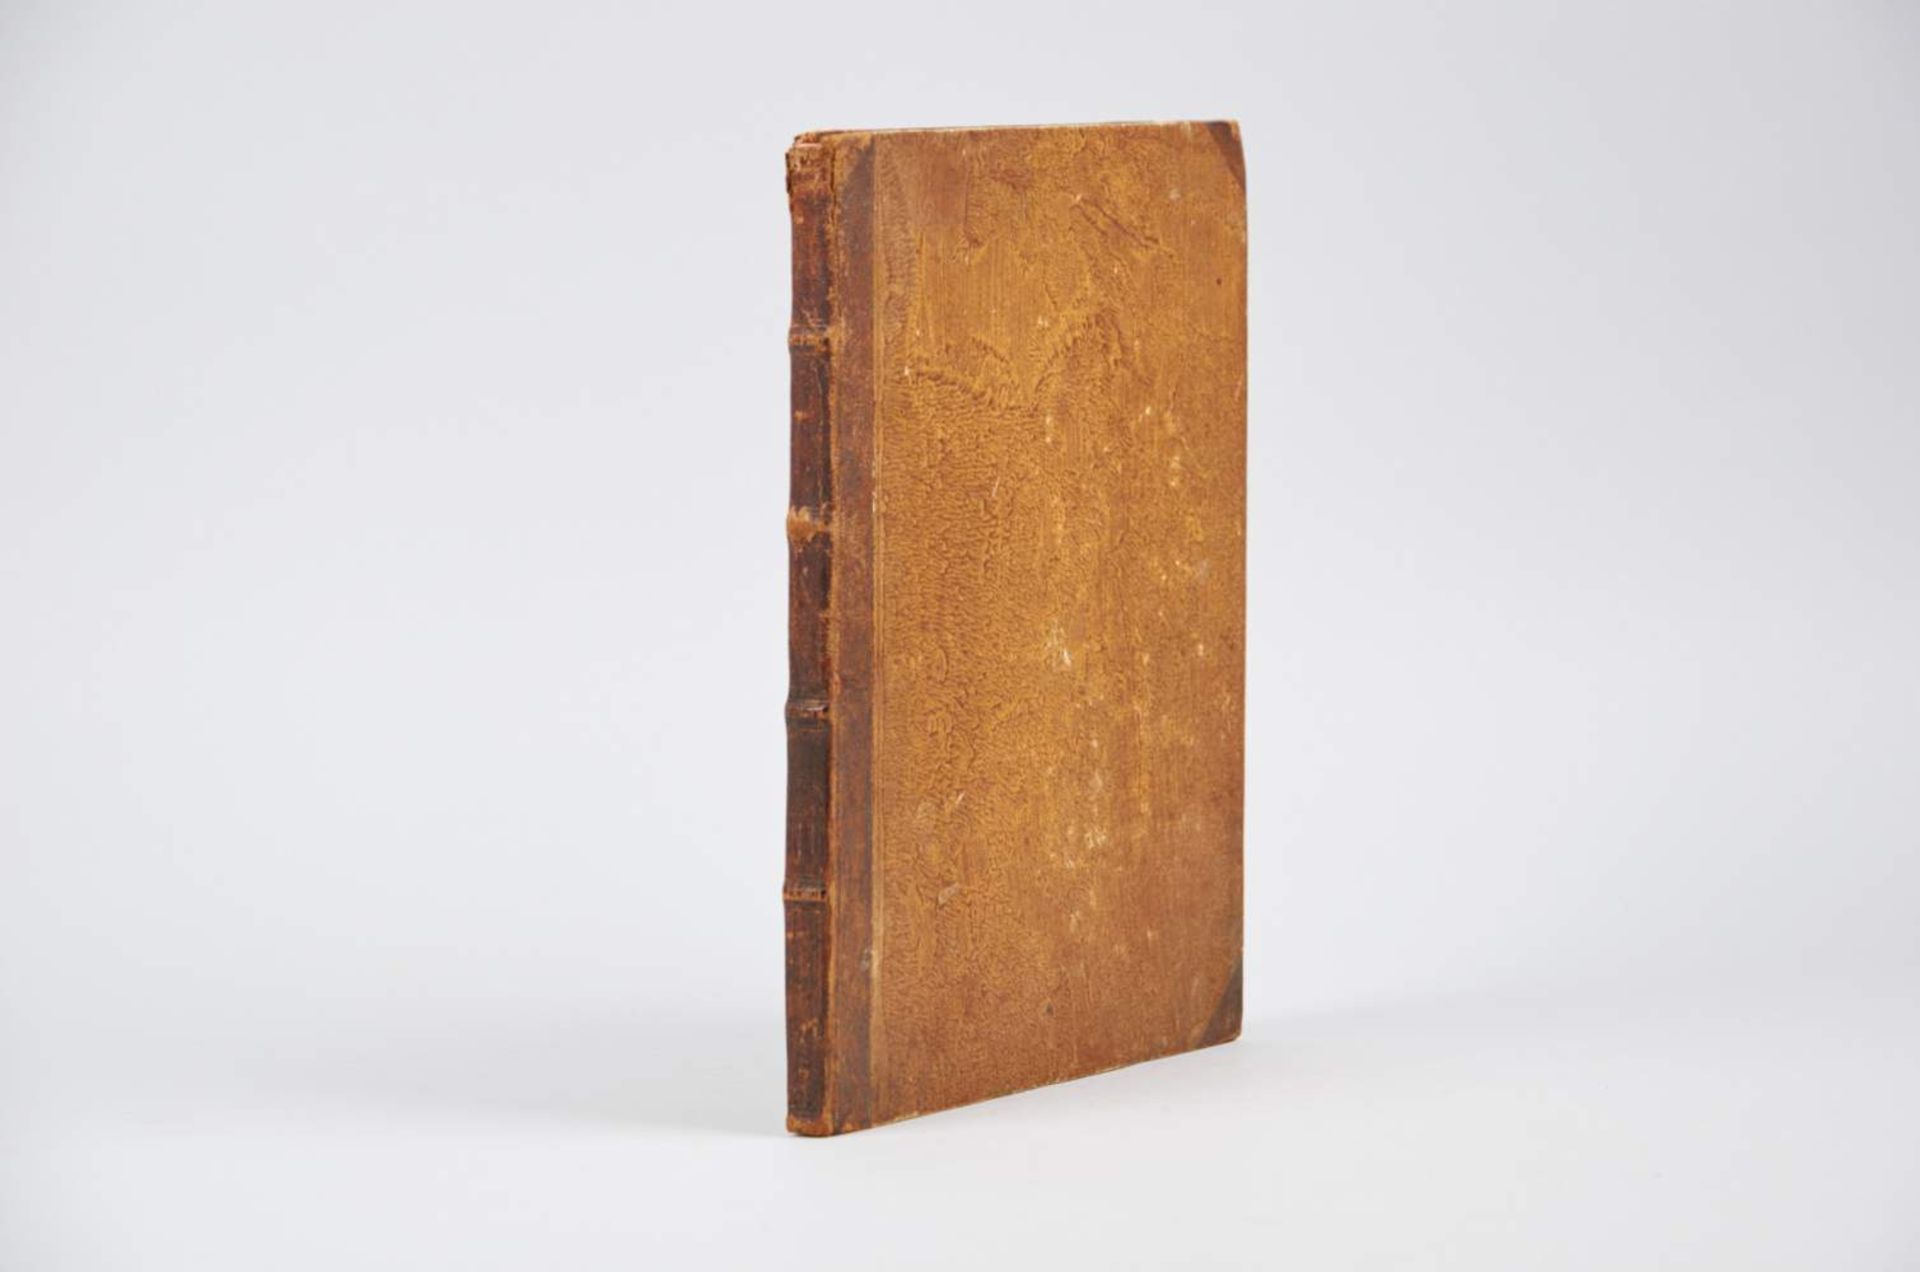 Griechisch-lateinisches Wörterbuch. Zweisprachige Handschrift auf Papier. Wohl Deutschland, um 1800.